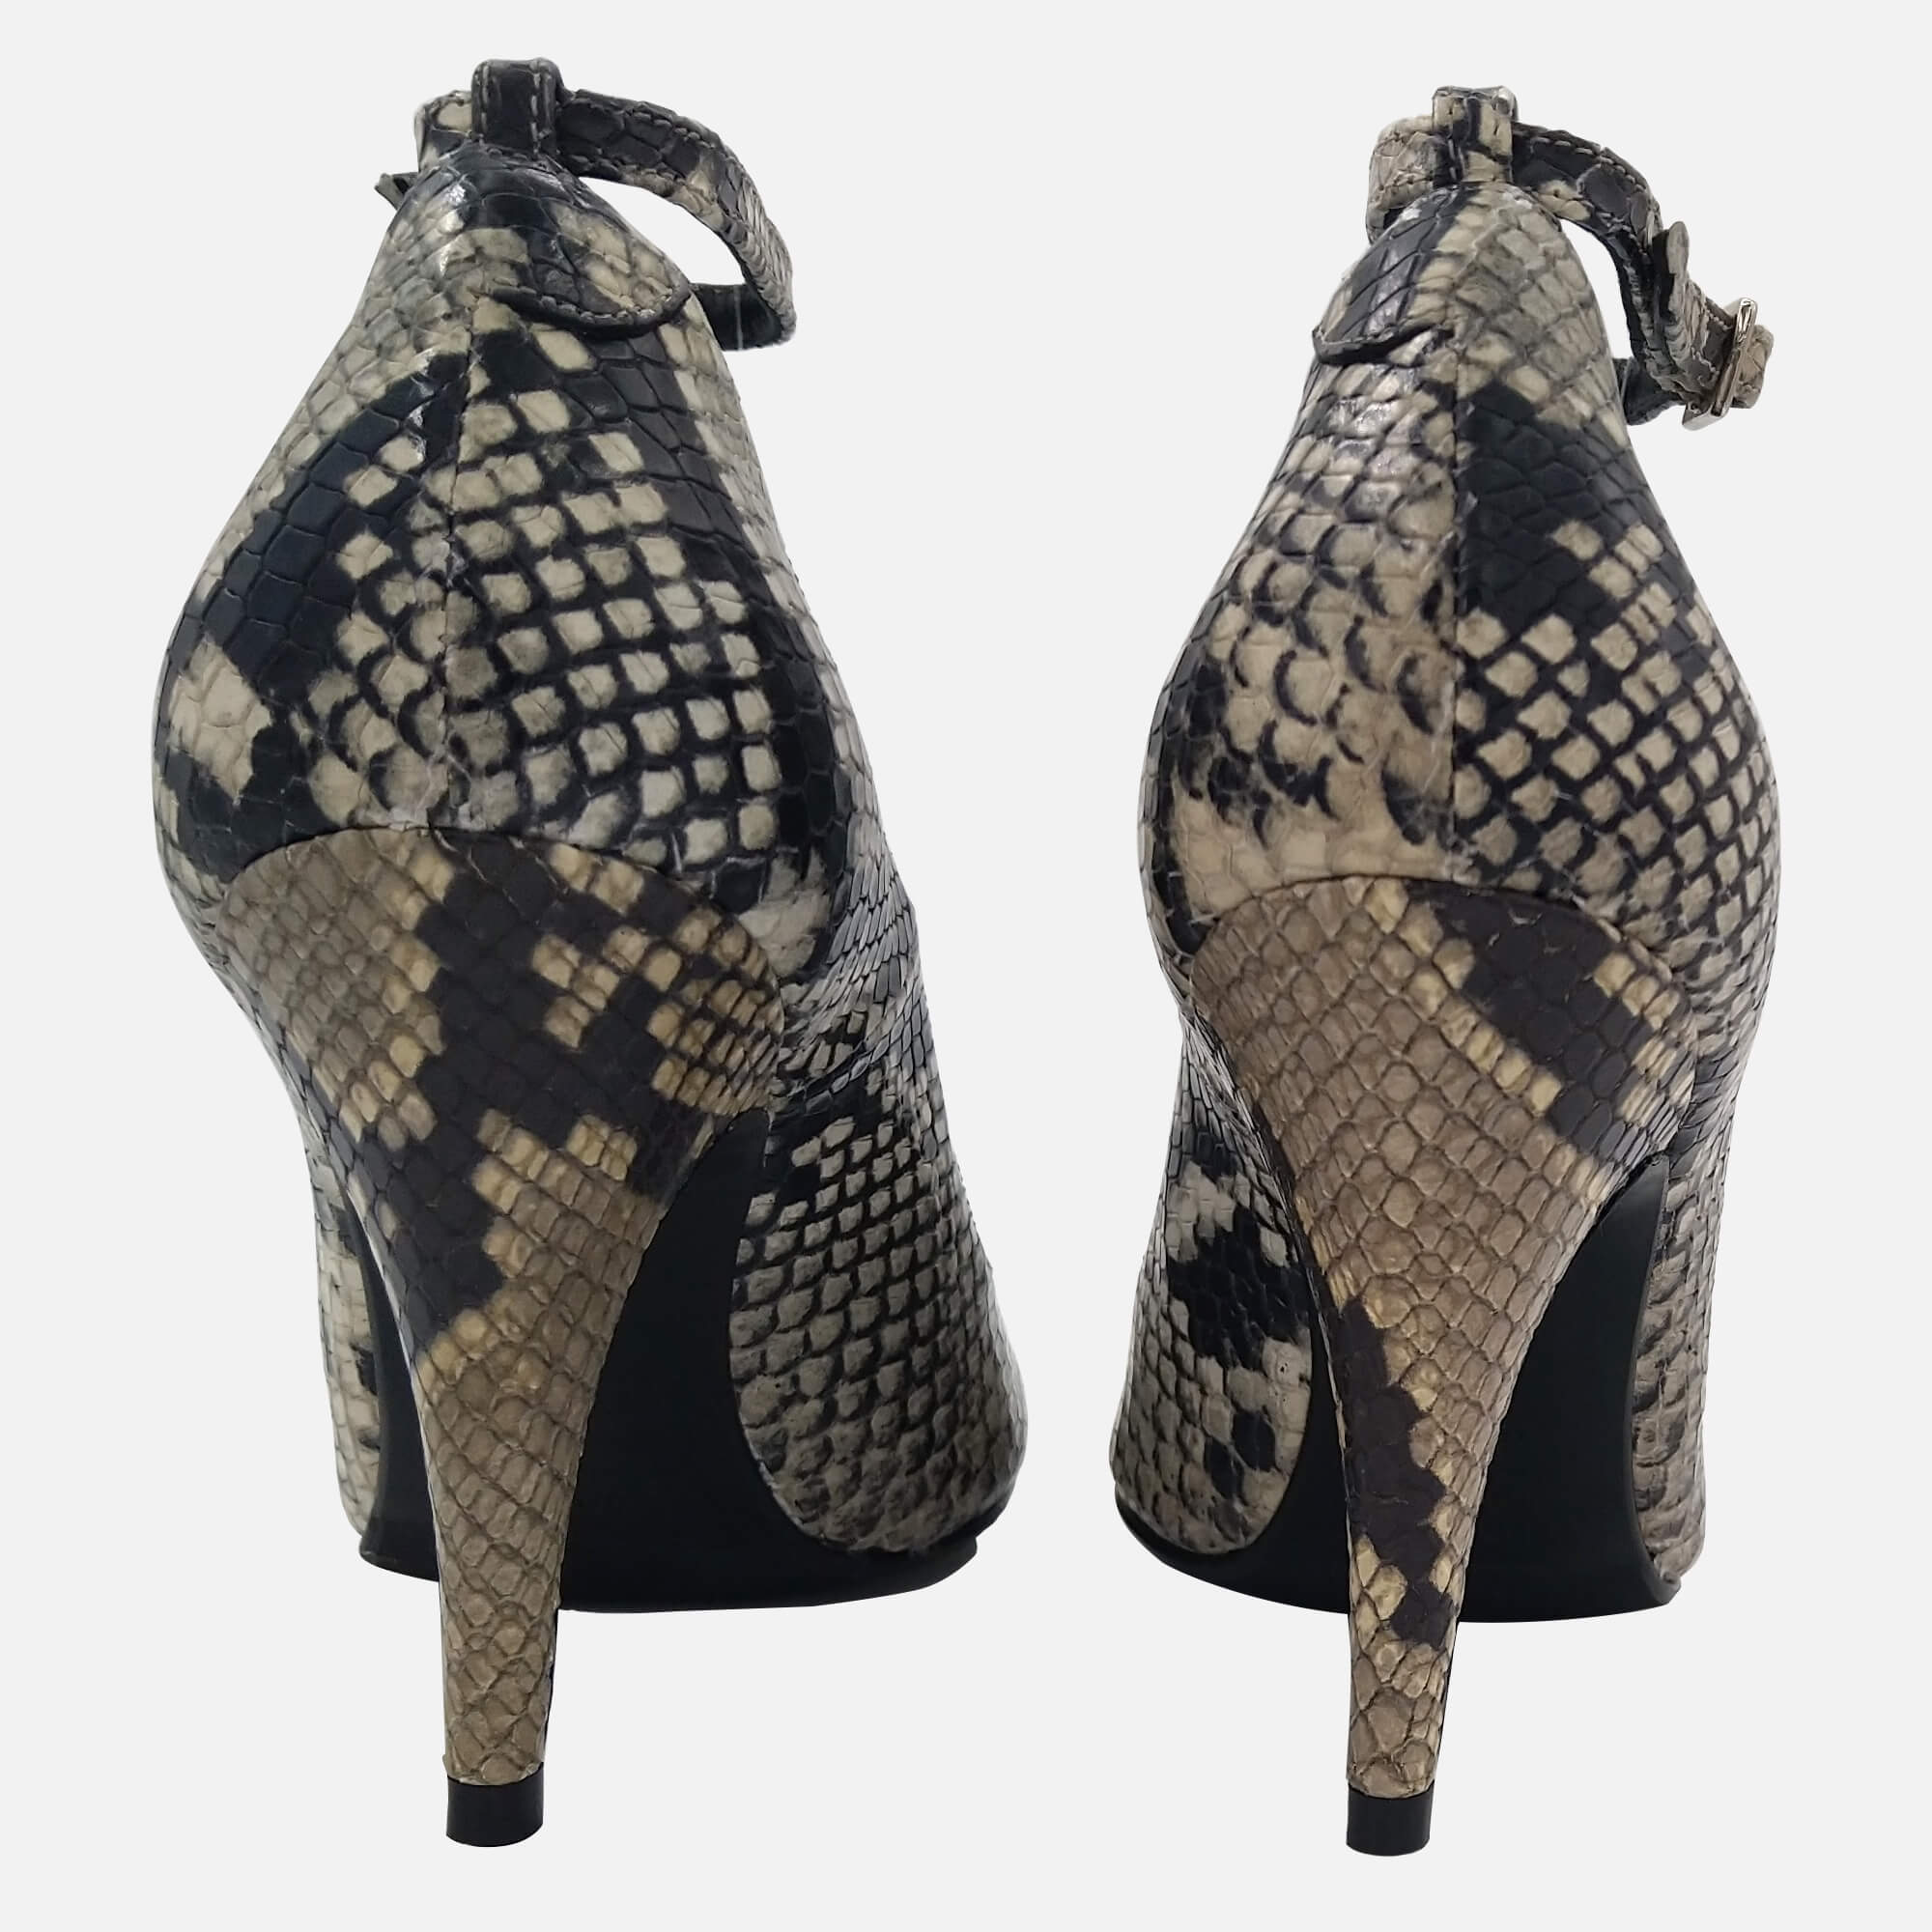 Eve’s Seduction « Stilettissimo. Designer Shoes for Women